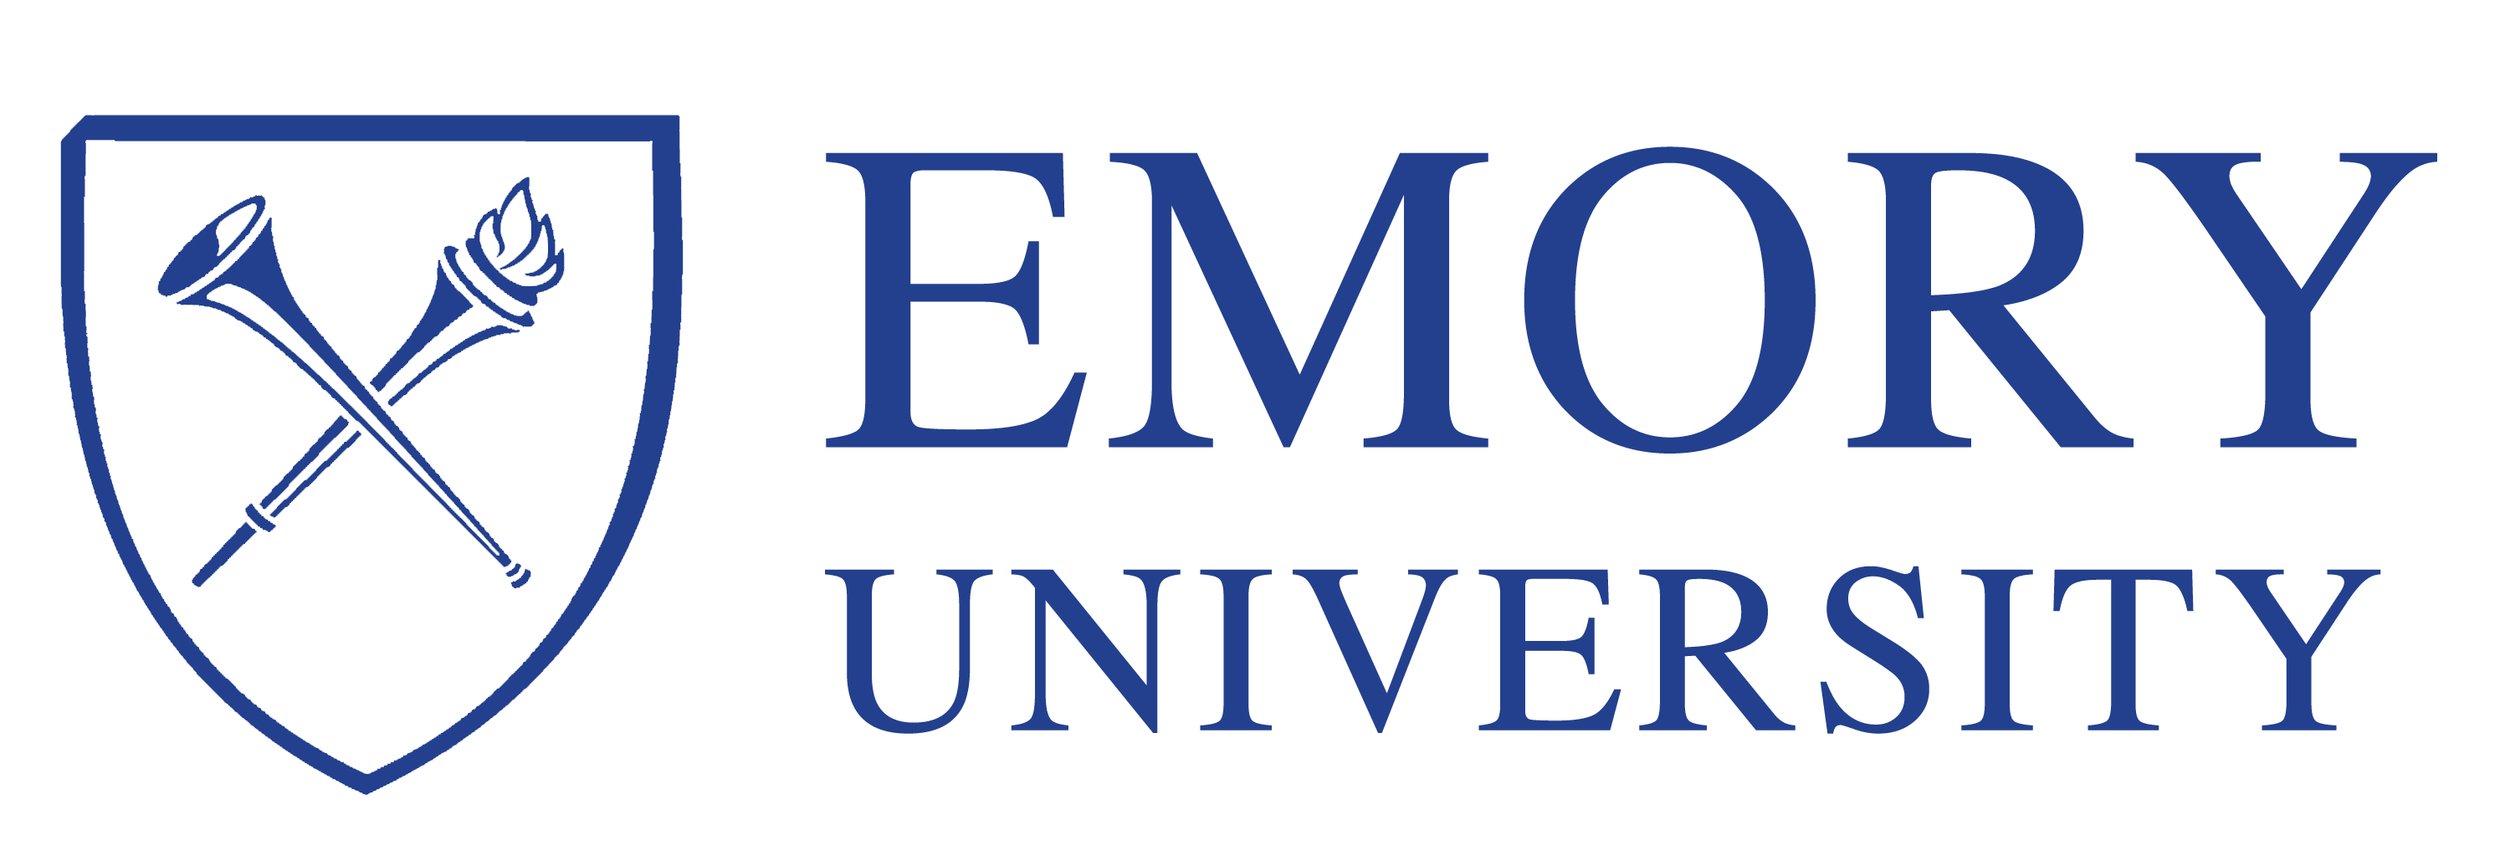 emory-university-logo.jpg